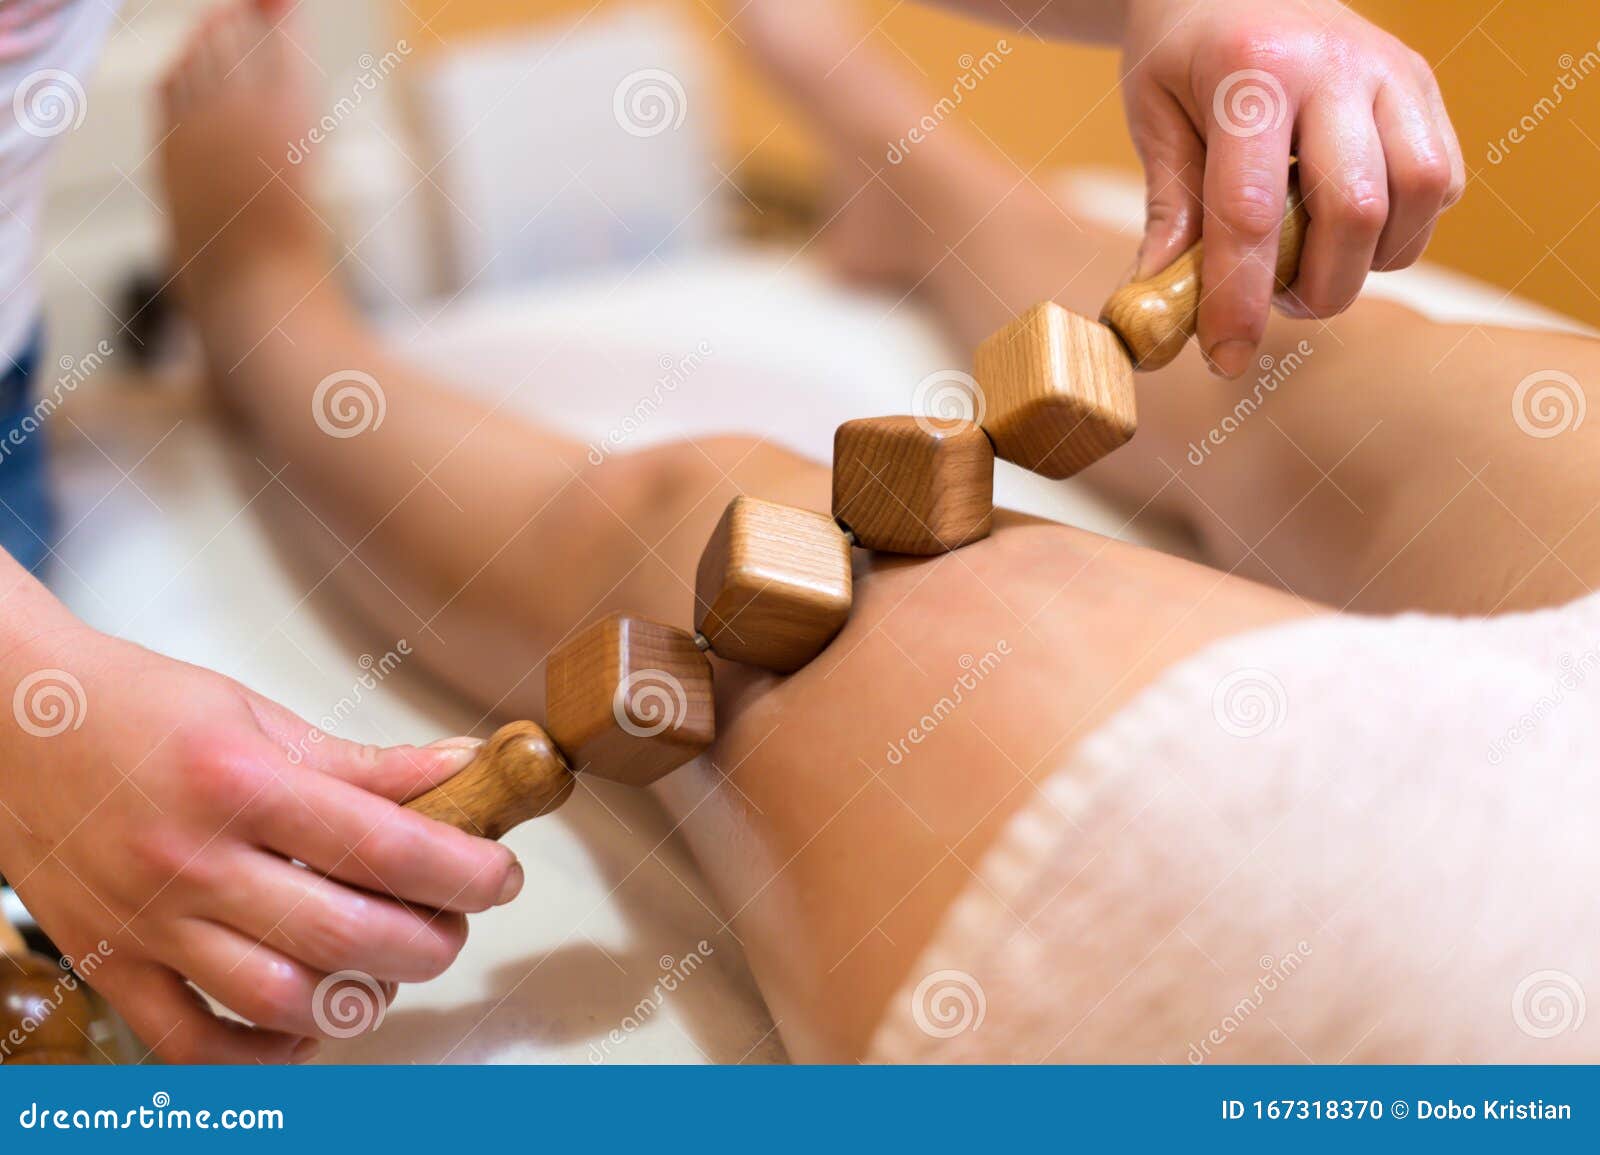 madero therapy body sculpting massage in salon spa